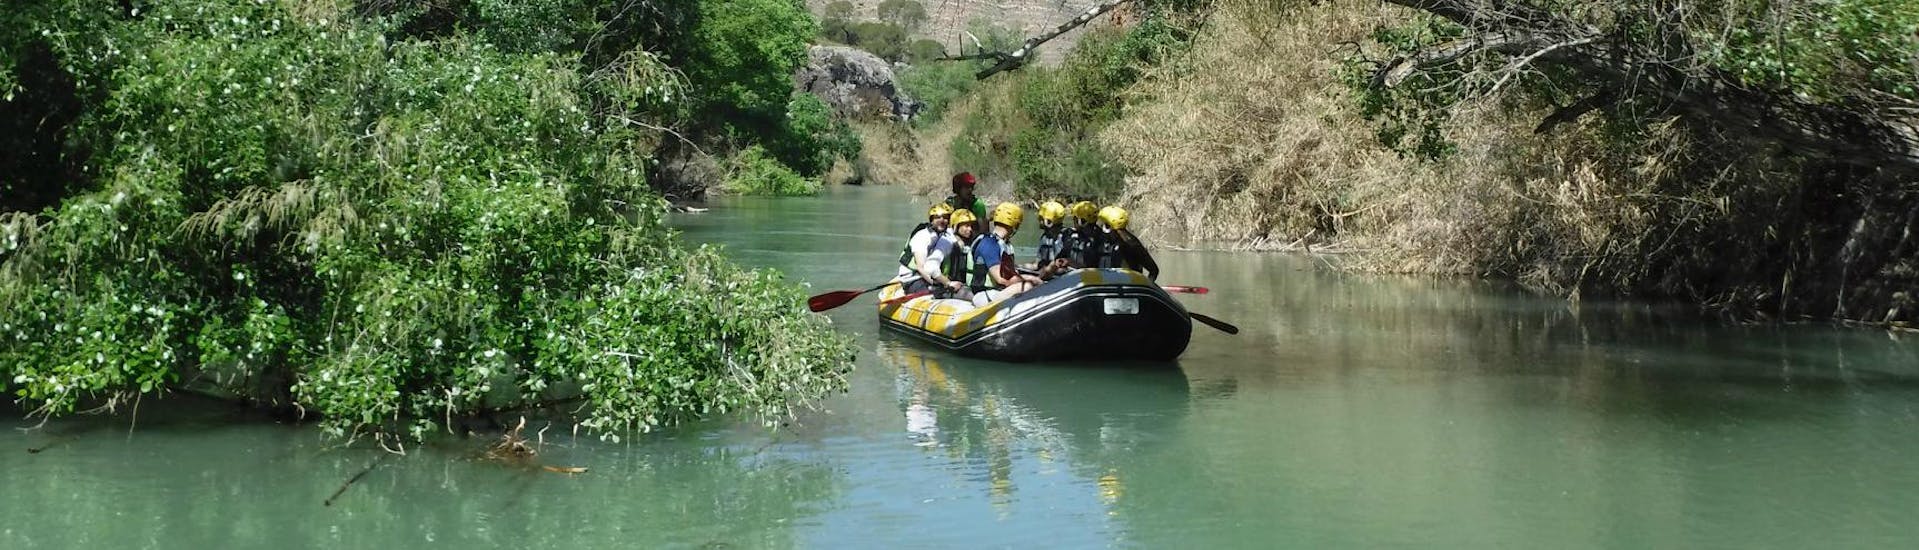 Eine Gruppe von Tourteilnehmern paddelt durch die wunderschönen Gewässer des Rio Segura während dem Rafting zum Cañón de Almadenes gemeinsam mit Cañón y Cañón Multiaventura.